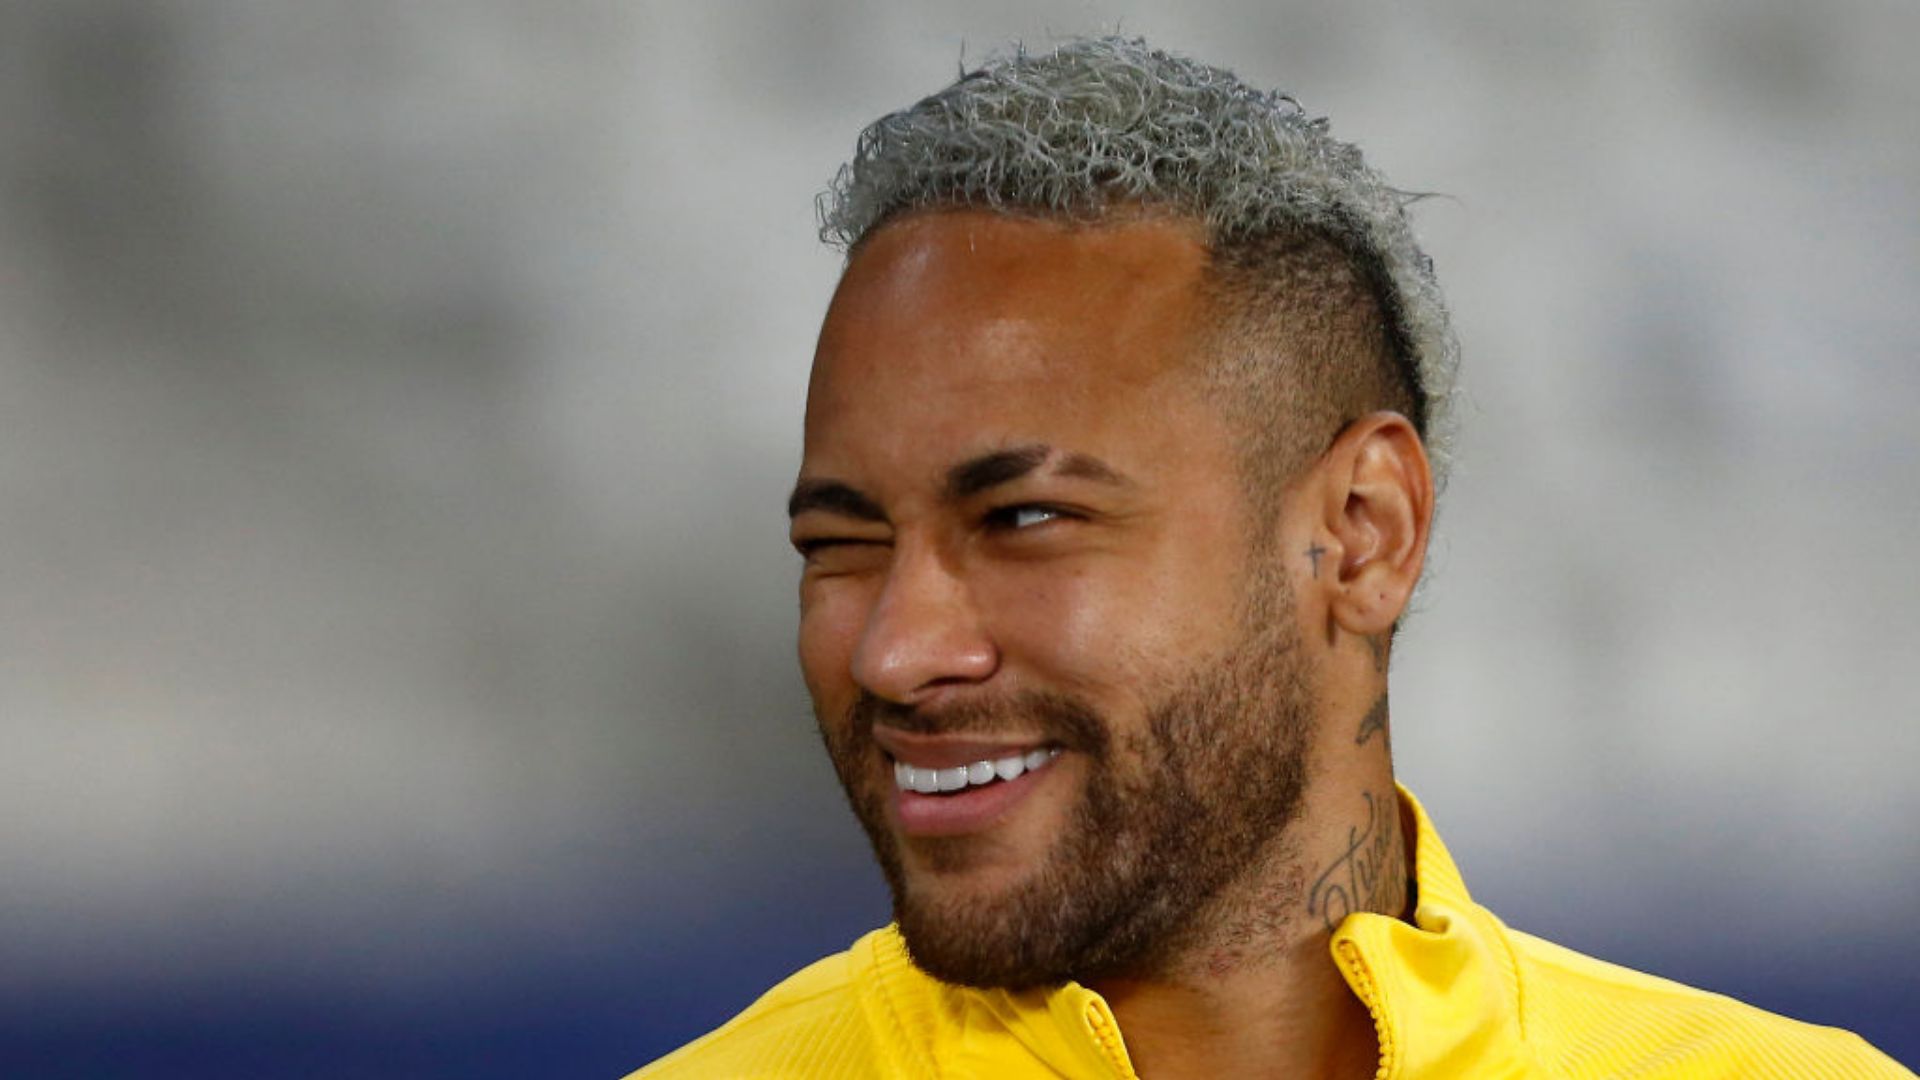 Após encontrar figurinha rara de Neymar do álbum da Copa, jovem recebe  ofertas para venda - Rádio Costazul FM 93.1